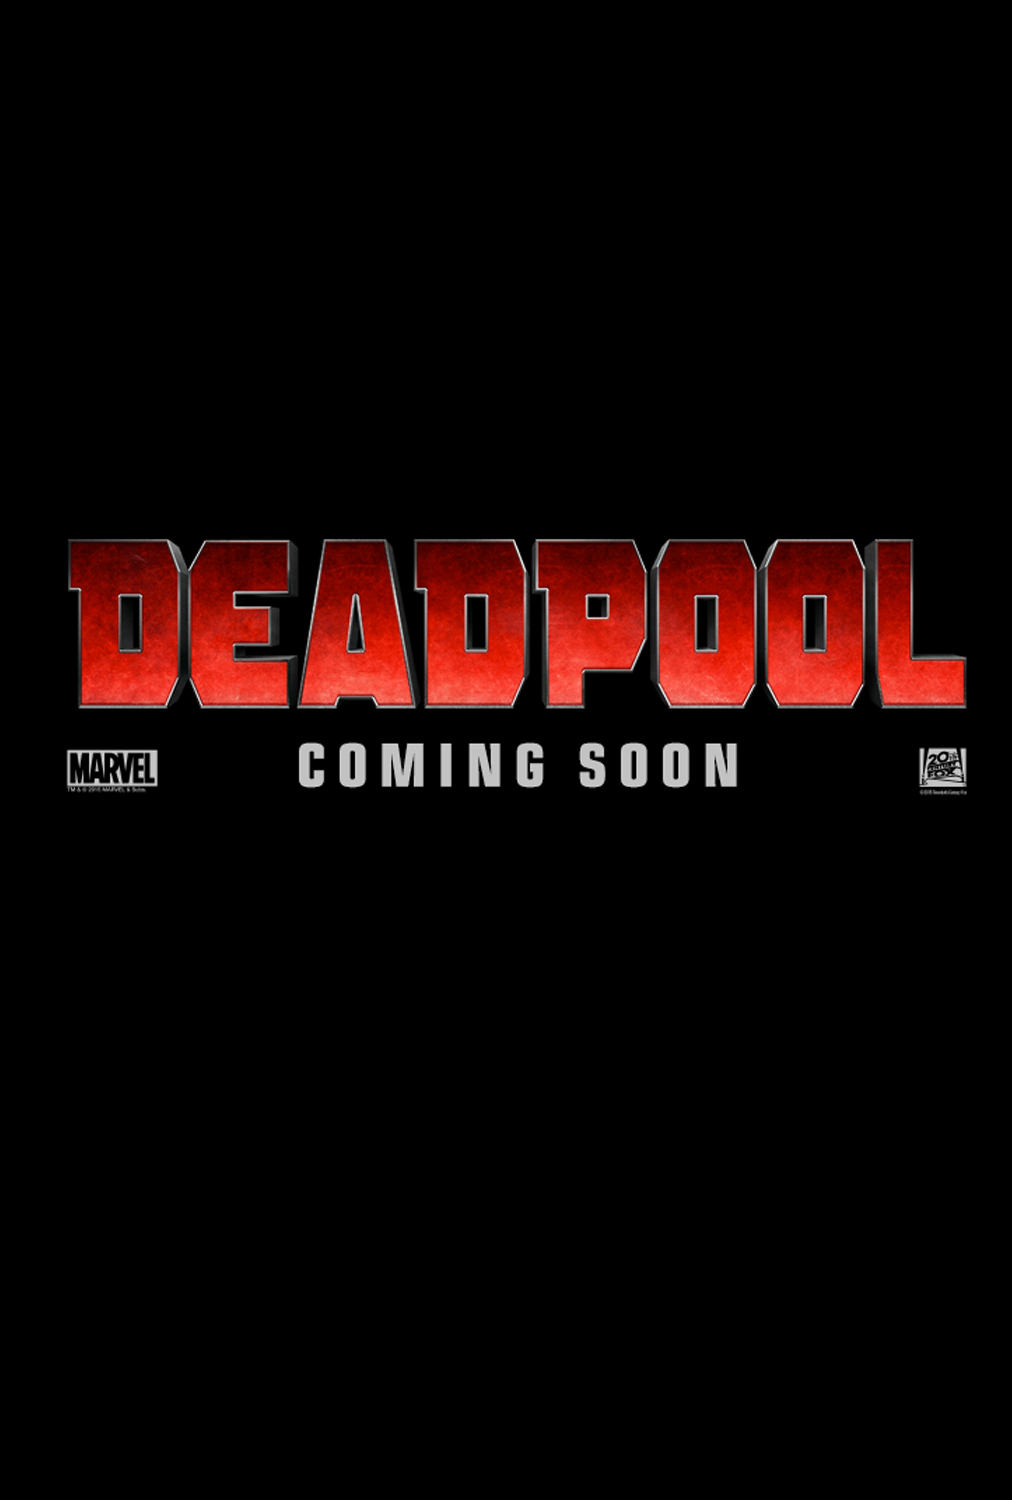 Deadpool (2016) movie photo - ref id 211470